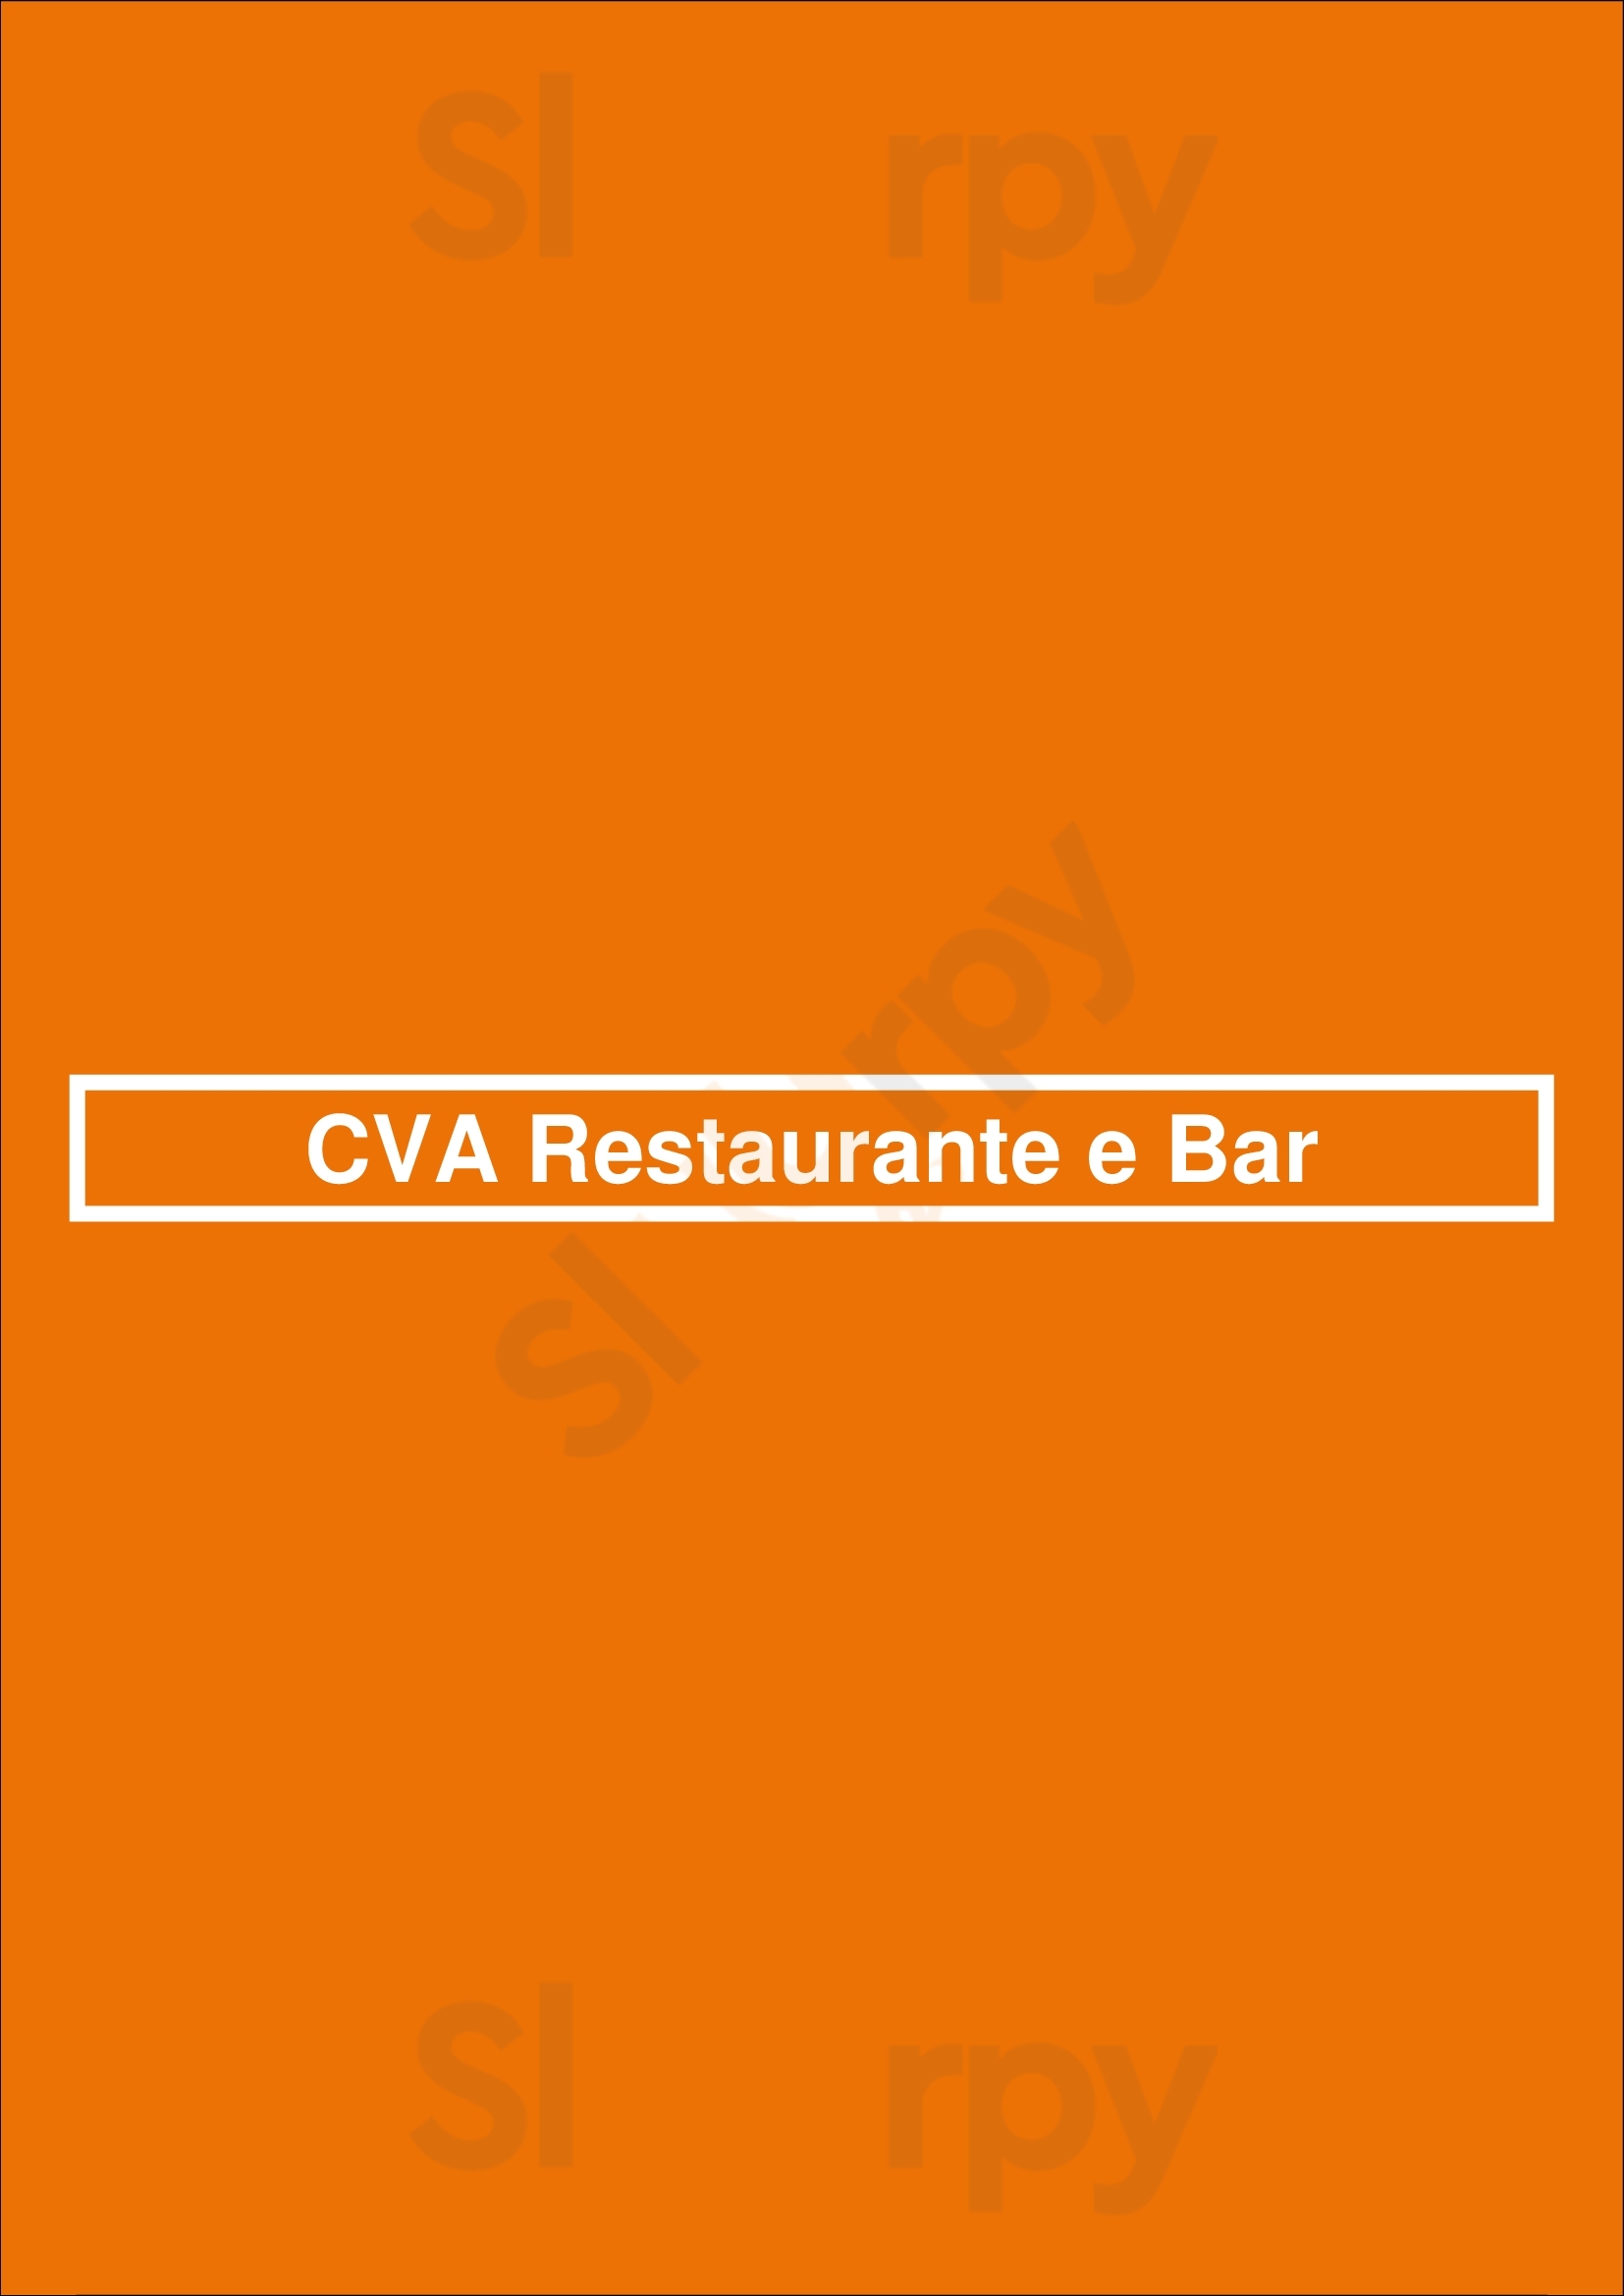 Cva Restaurante E Bar Leça da Palmeira Menu - 1